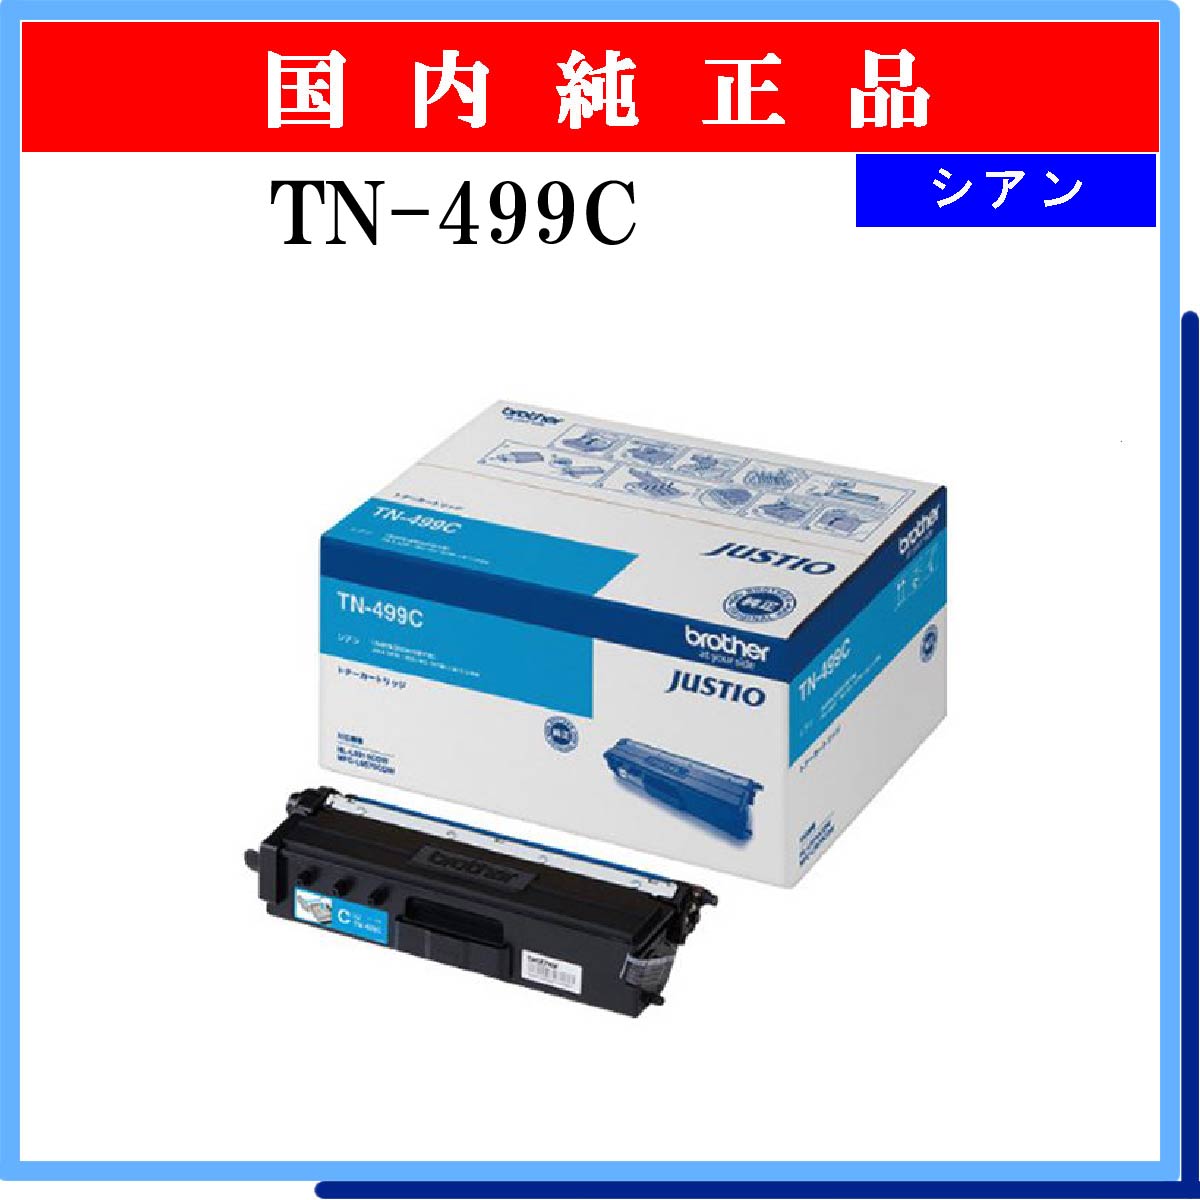 1TN-499C 純正